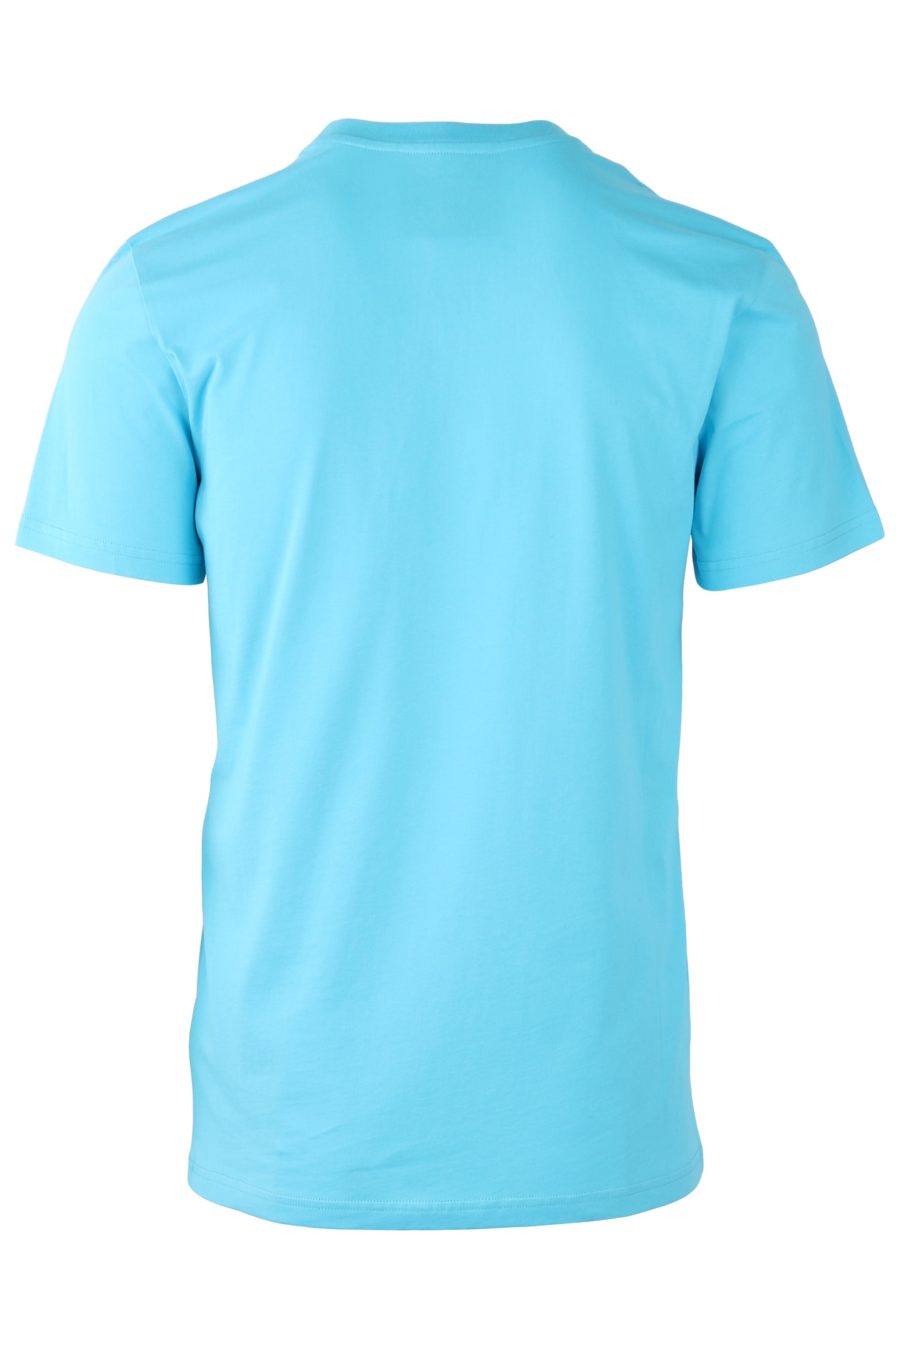 Moschino Couture T-shirt azul clara com logótipo preto - 088ed055eb7322c9c4e86fd859f32b41f7f670f3